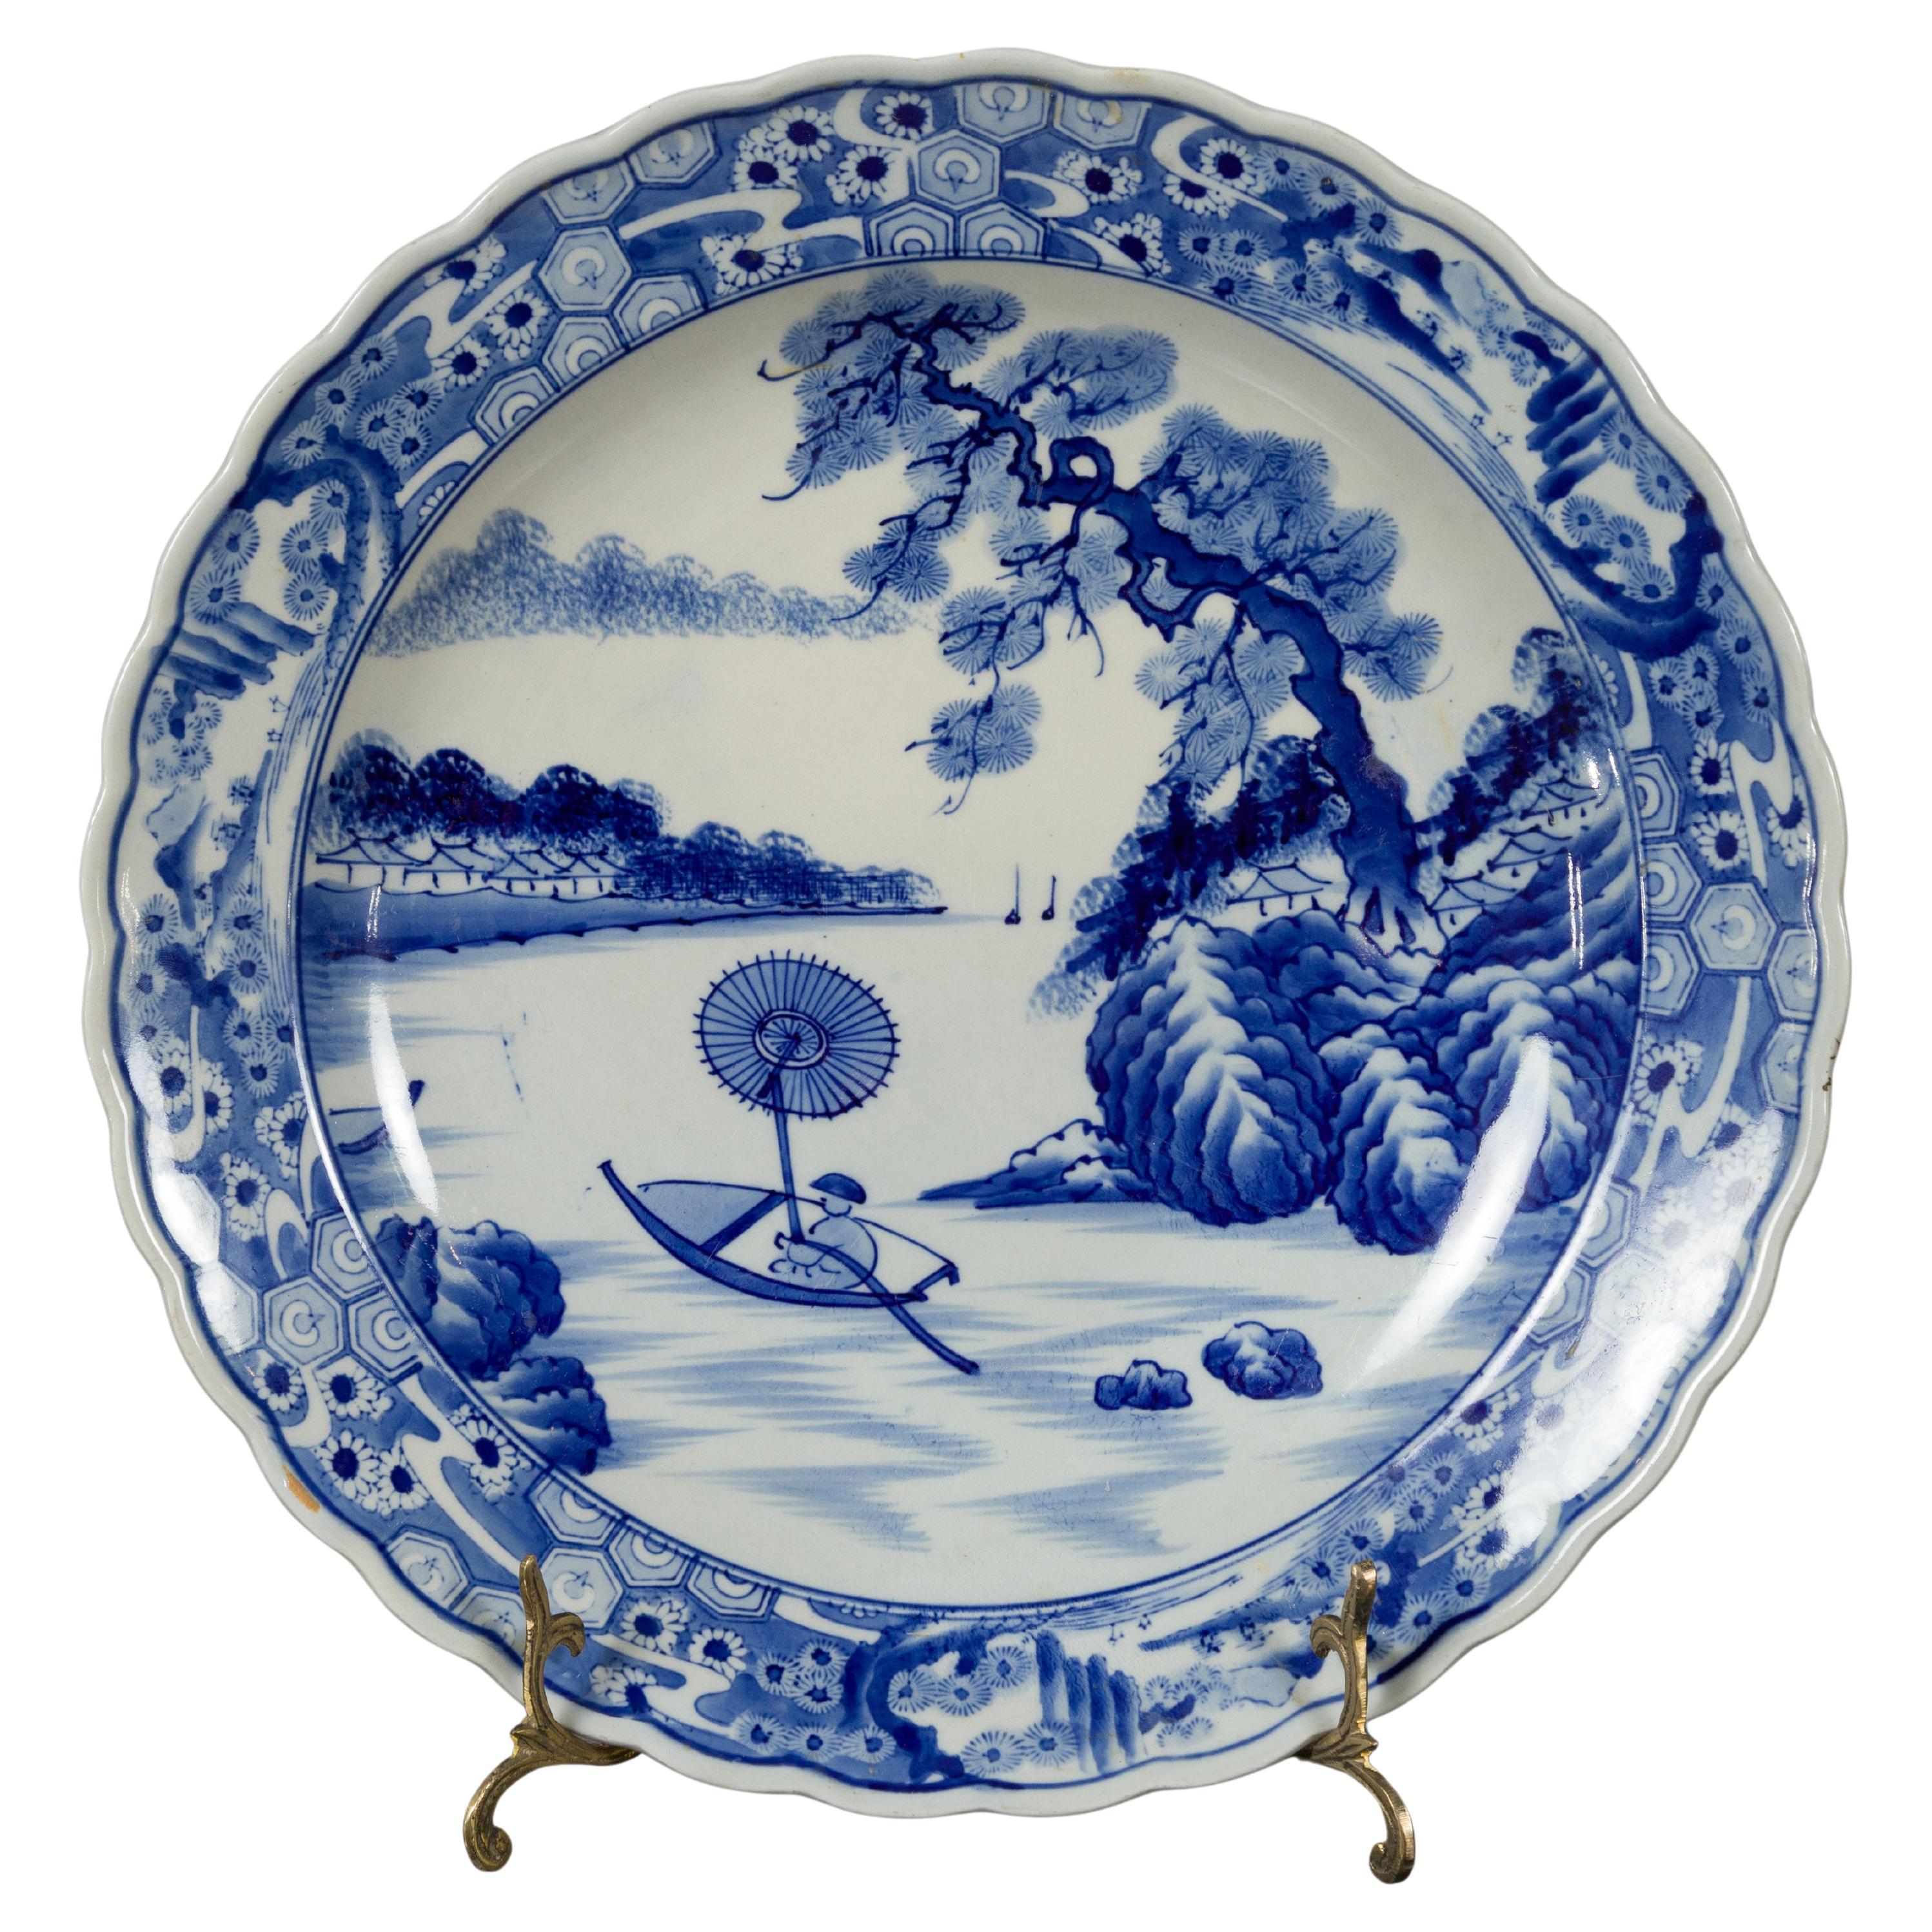 Japanische japanische Imari-Platte aus Porzellan des 19. Jahrhunderts mit blauem und weißem Dekor